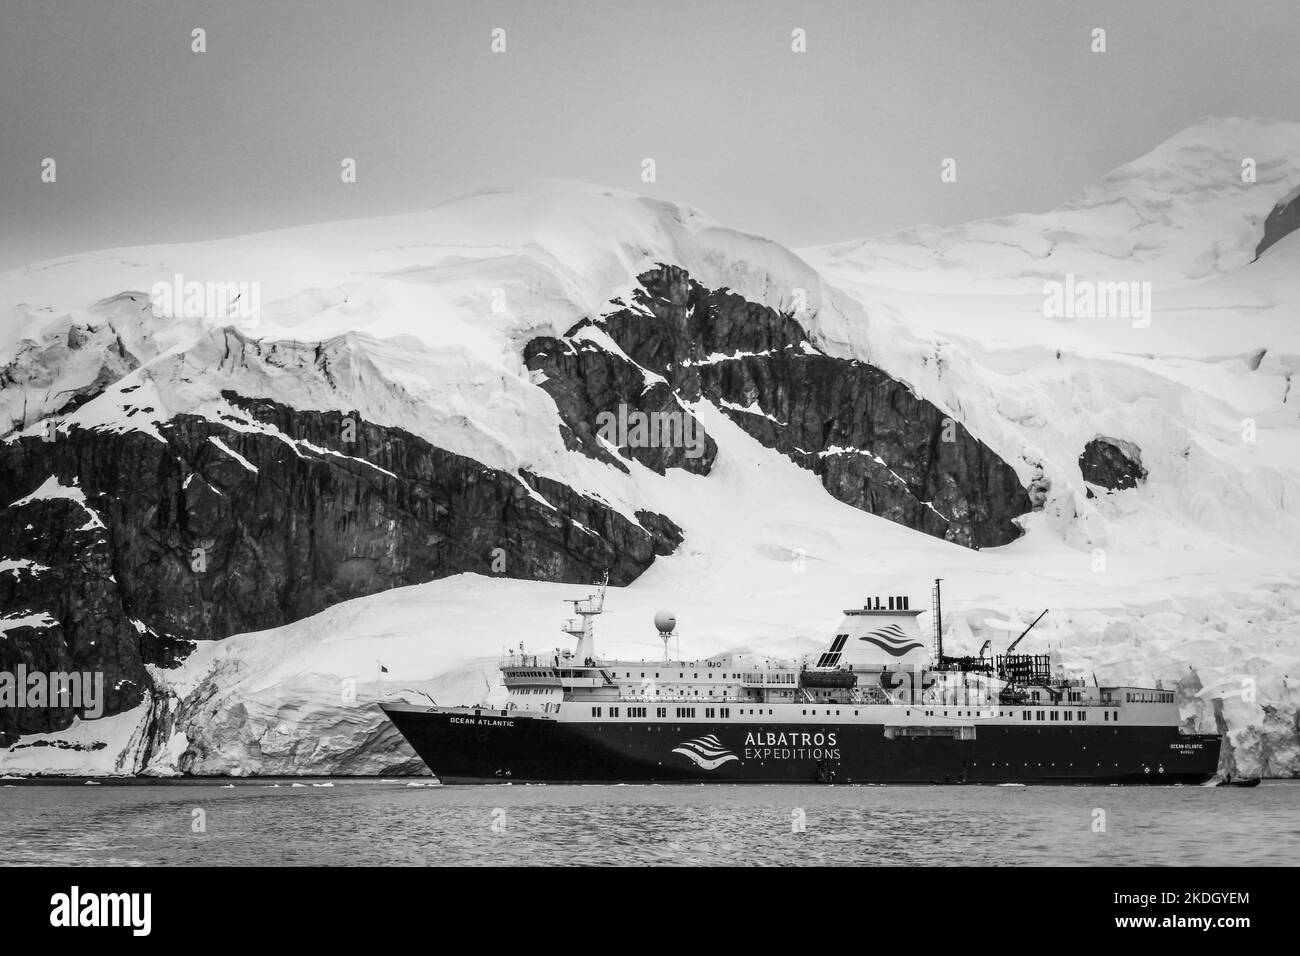 Bateau de croisière d'expédition en Antarctique avec de la neige, de la glace ou des icebergs derrière vous Banque D'Images